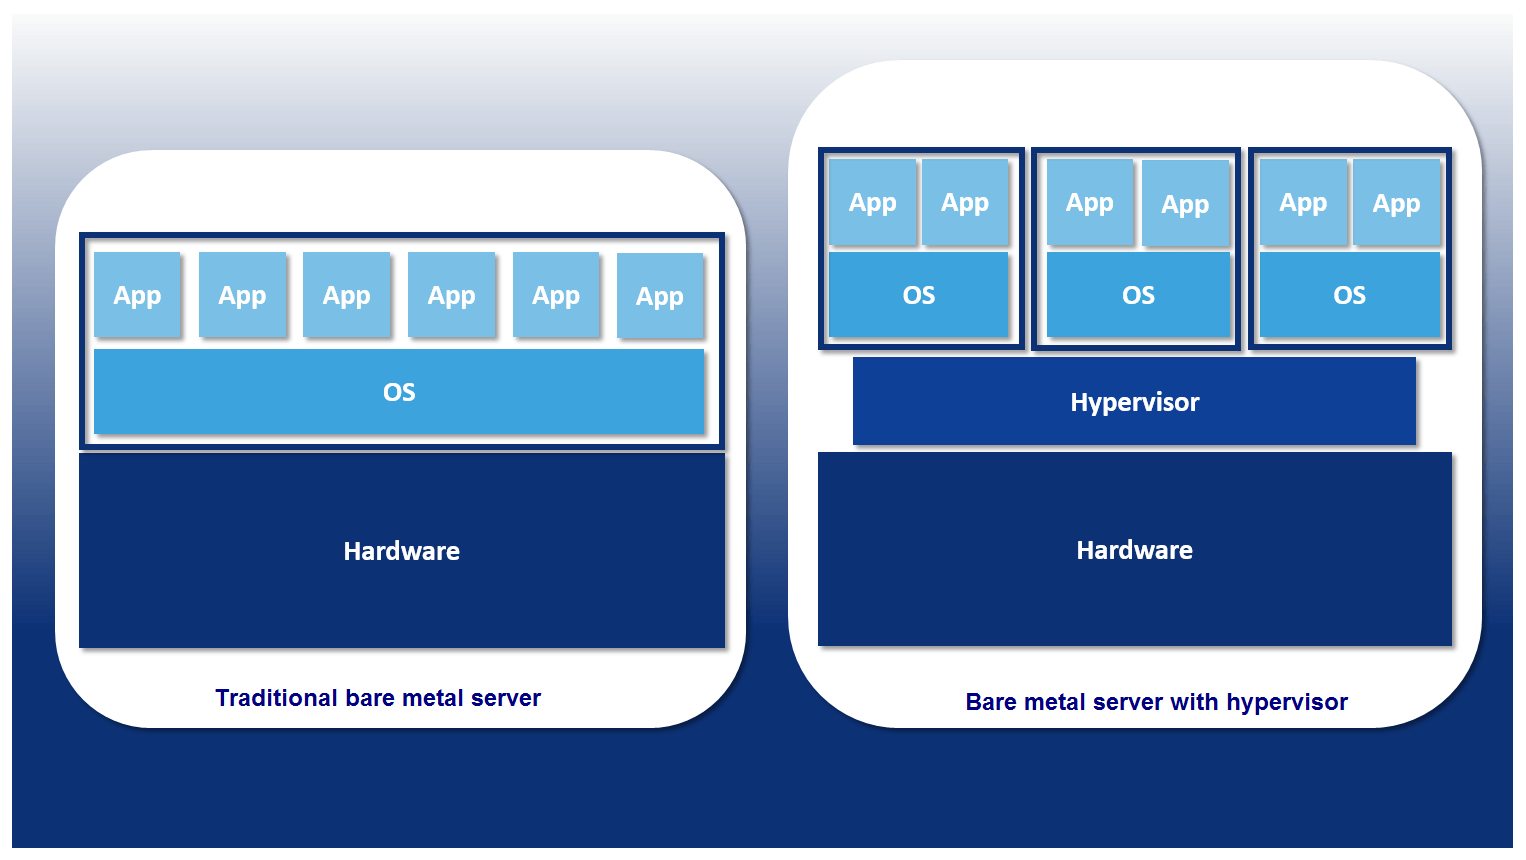 Rappresentazione schematica di un bare metal server con e senza hypervisor